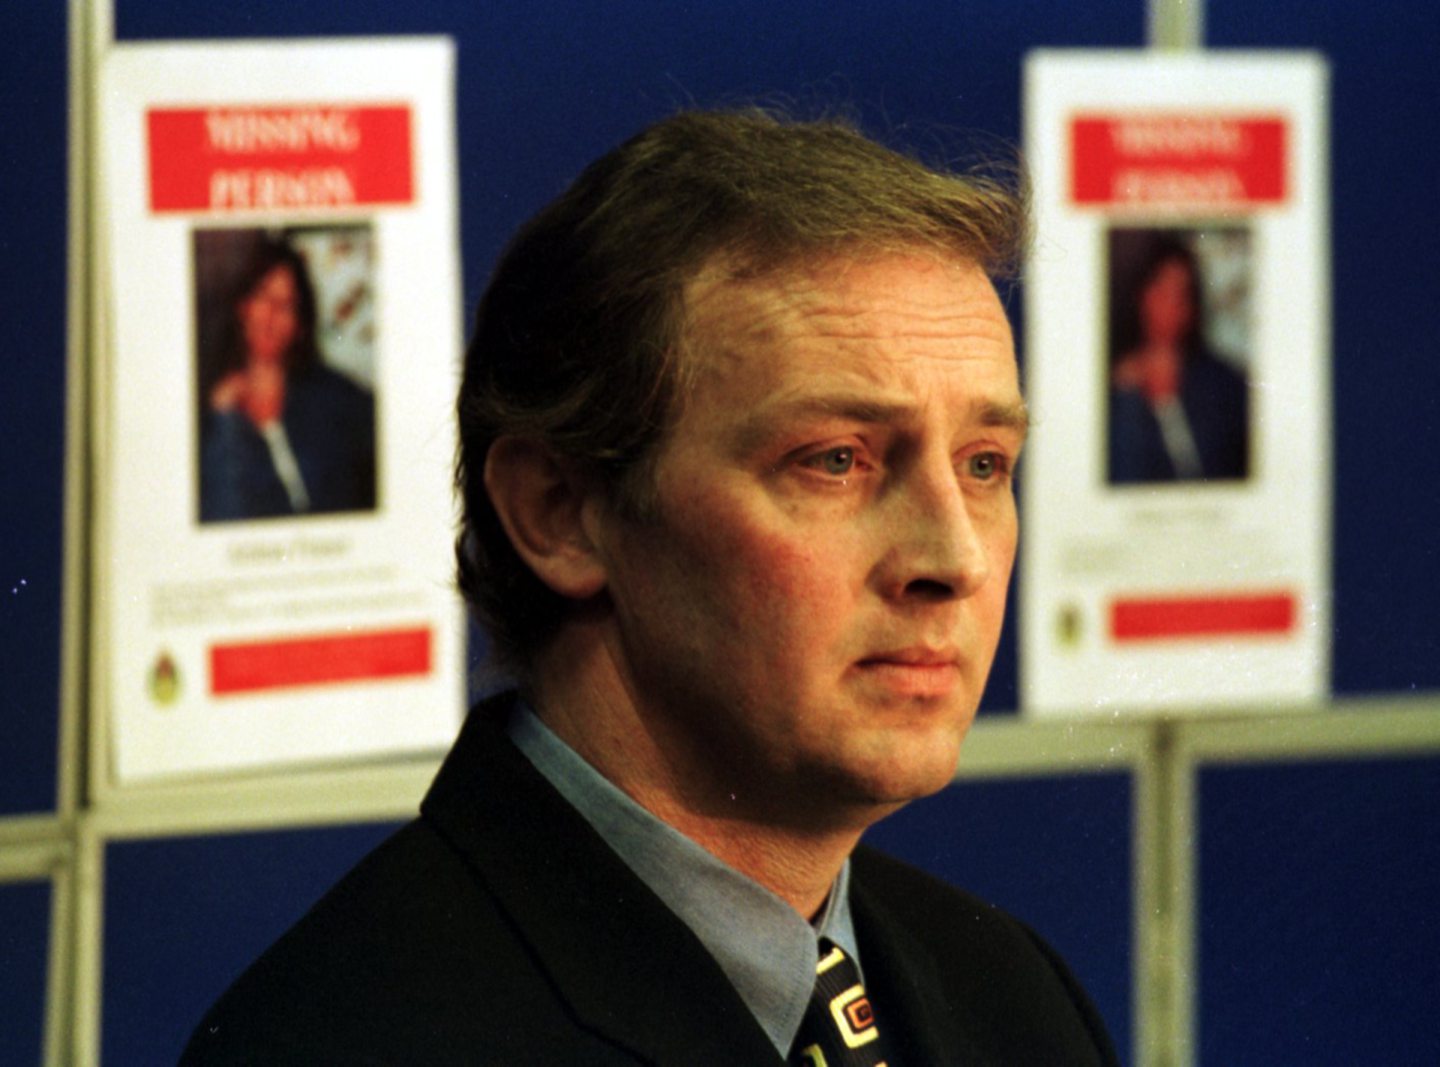 Nat Fraser, husband of Arlene Fraser, at a press conference after she went missing in April 1998